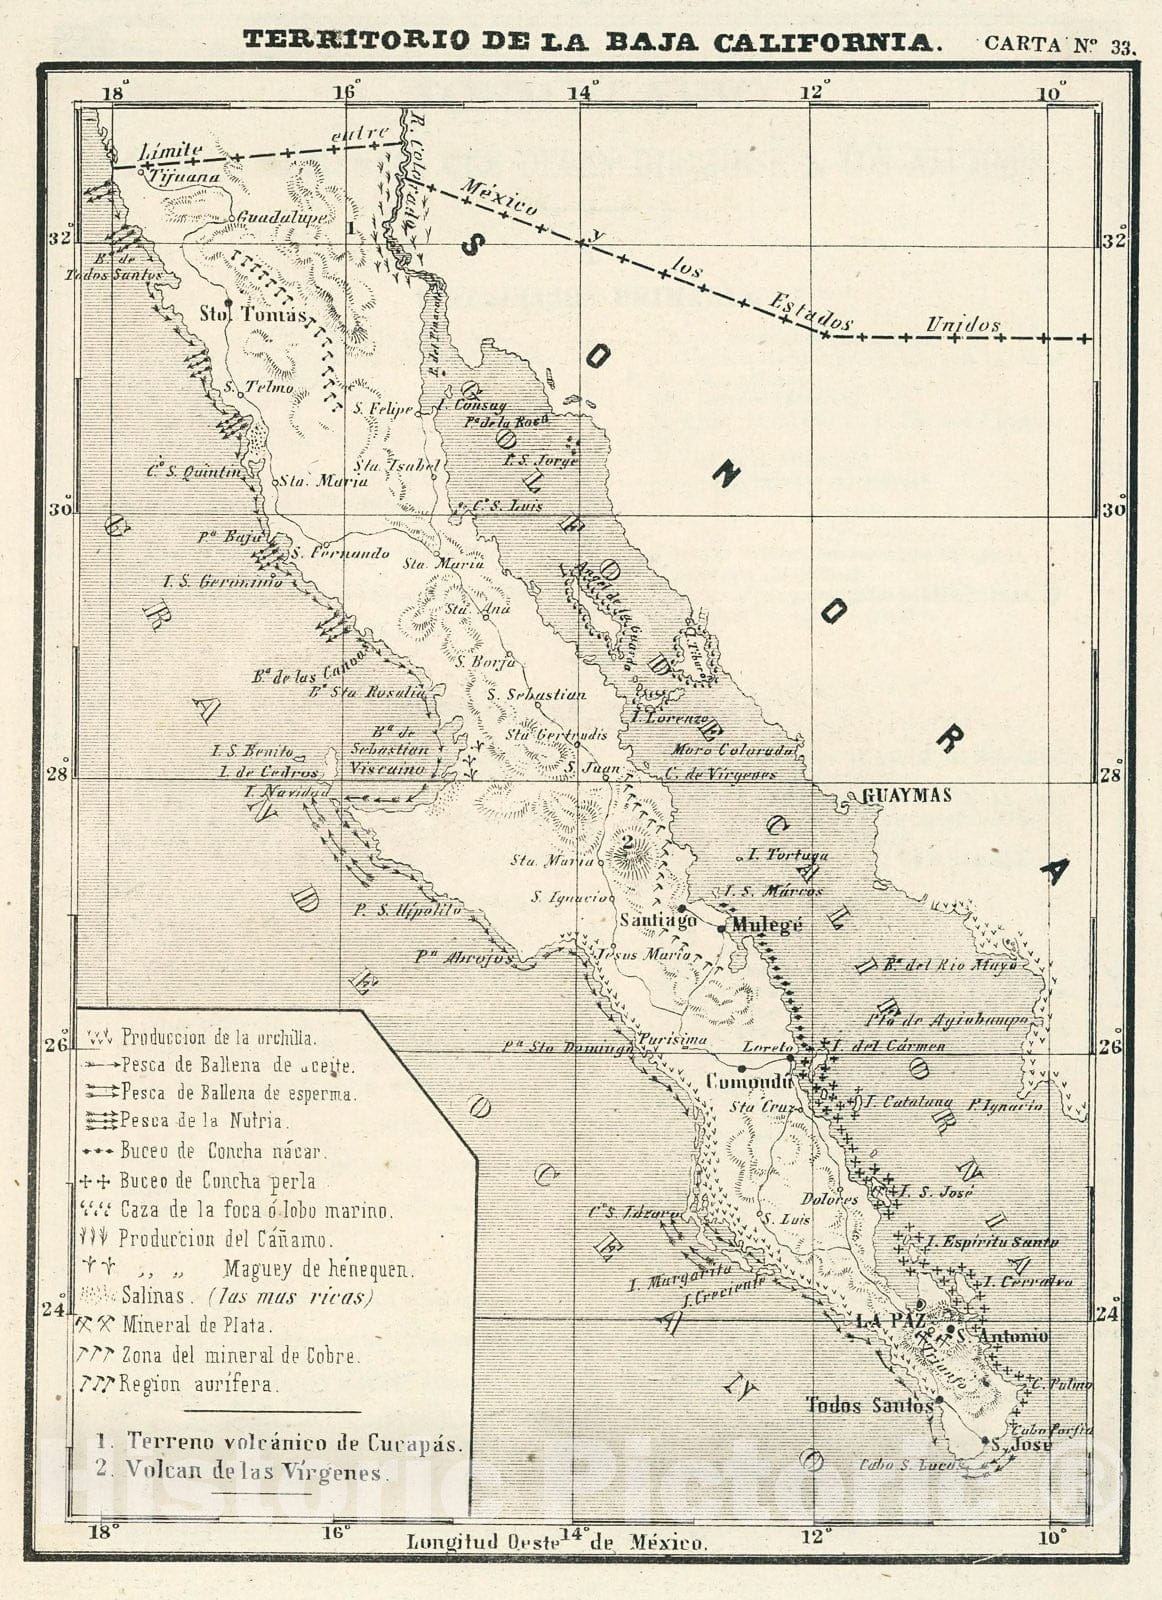 Historic Map : Text and Map: Territorio de la Baja California. Carta No. 33., 1874, Vintage Wall Decor